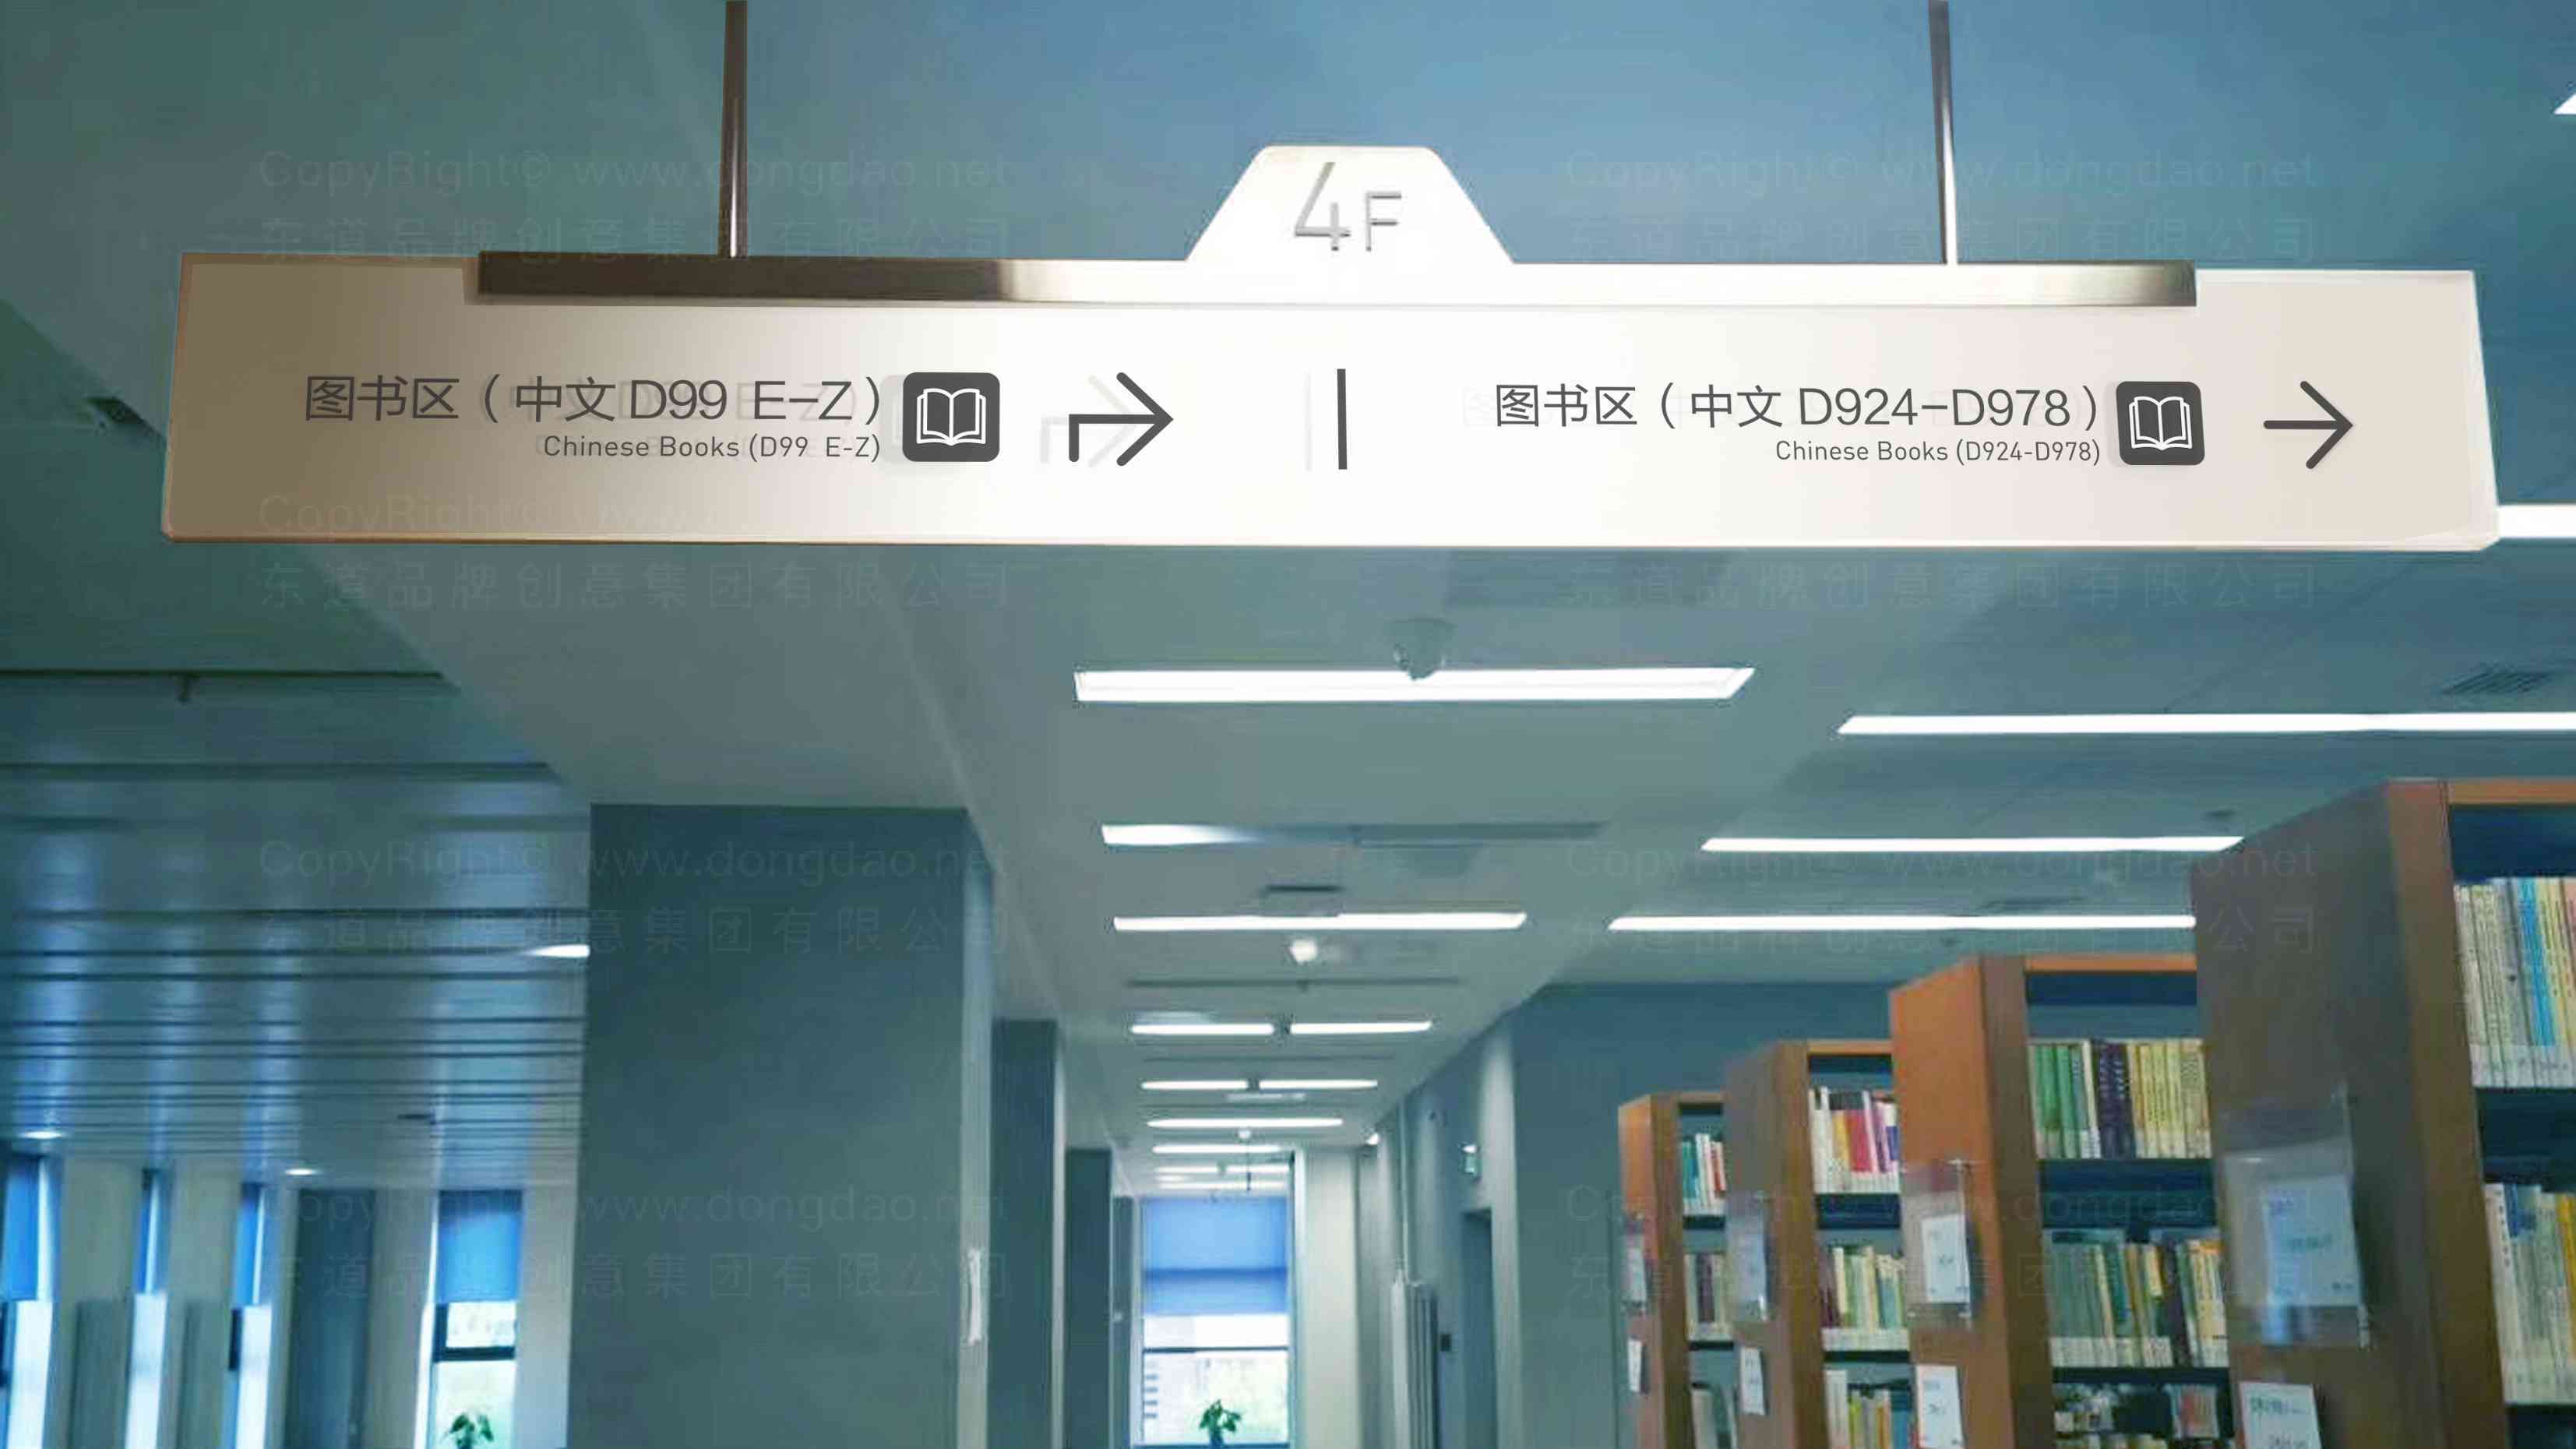 清华大学图书馆装饰工程标识制作图片素材